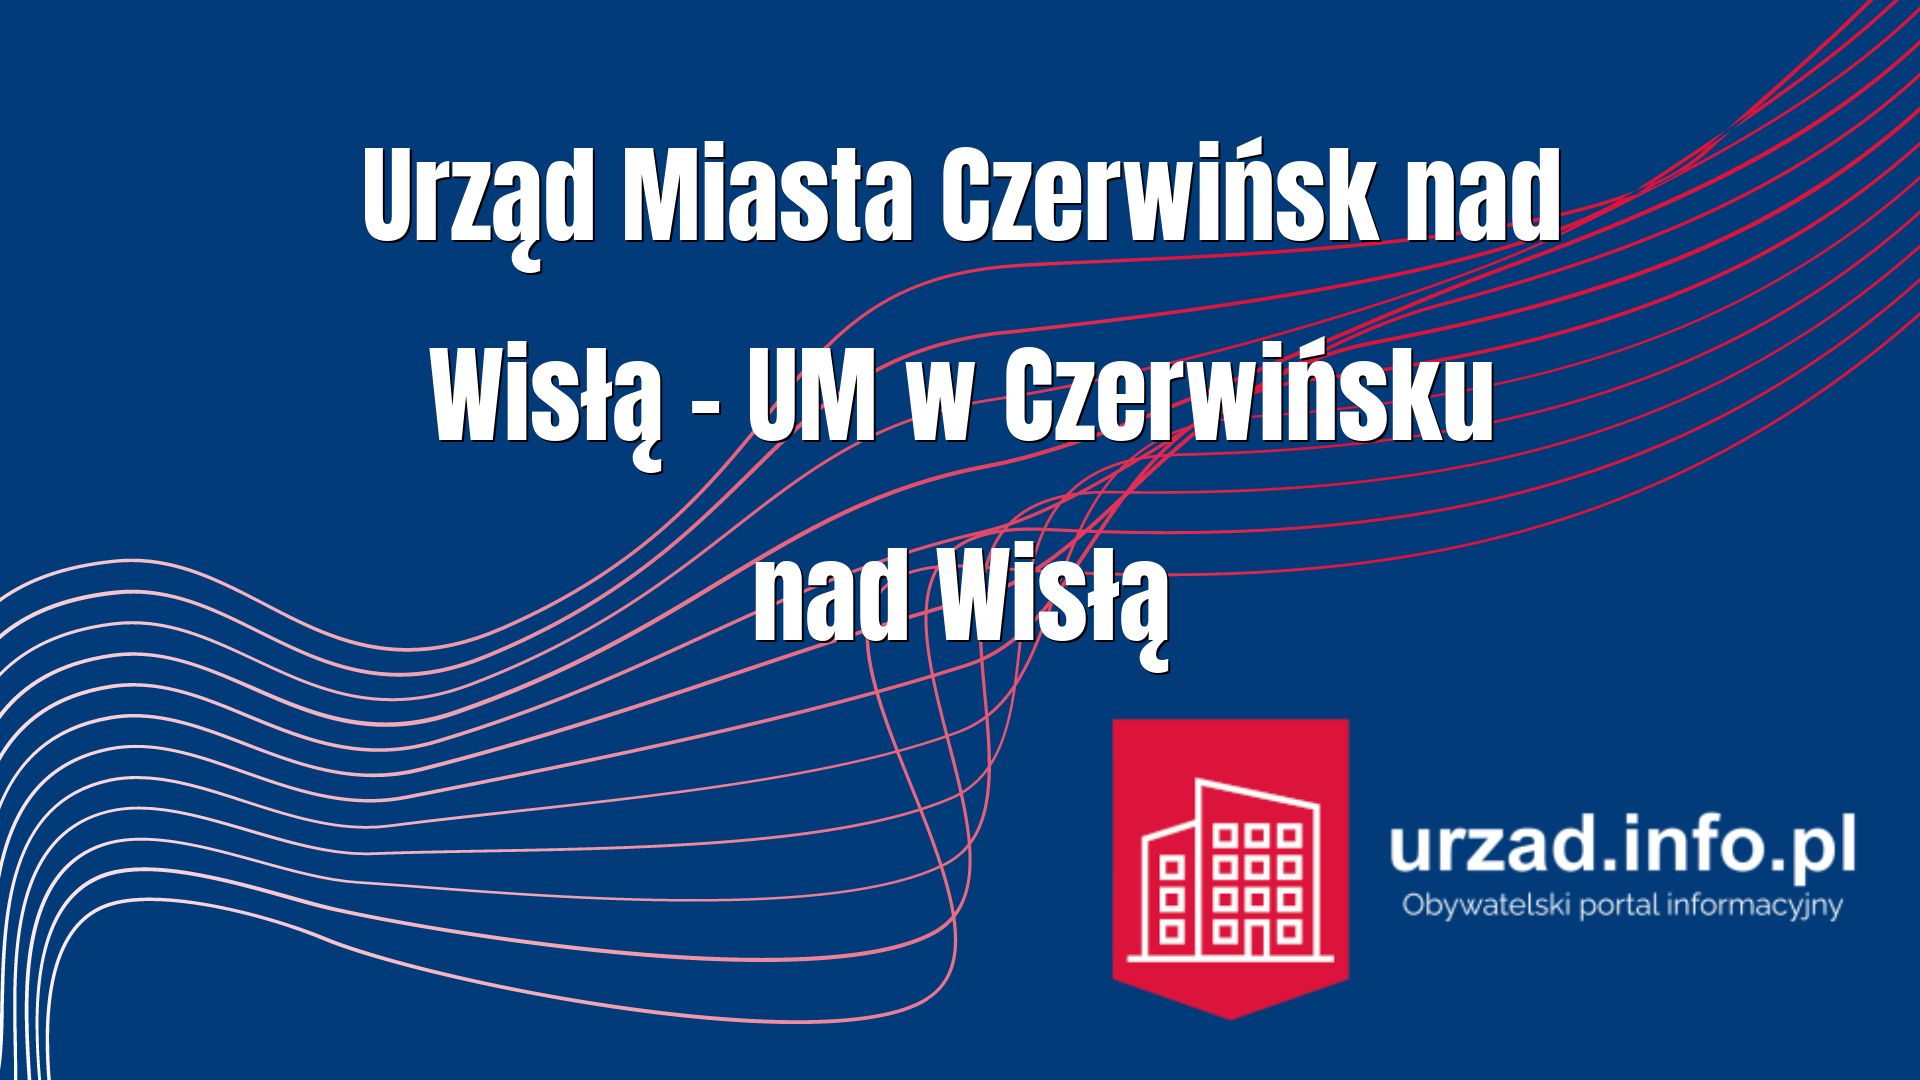 Urząd Miasta Czerwińsk nad Wisłą – UM w Czerwińsku nad Wisłą